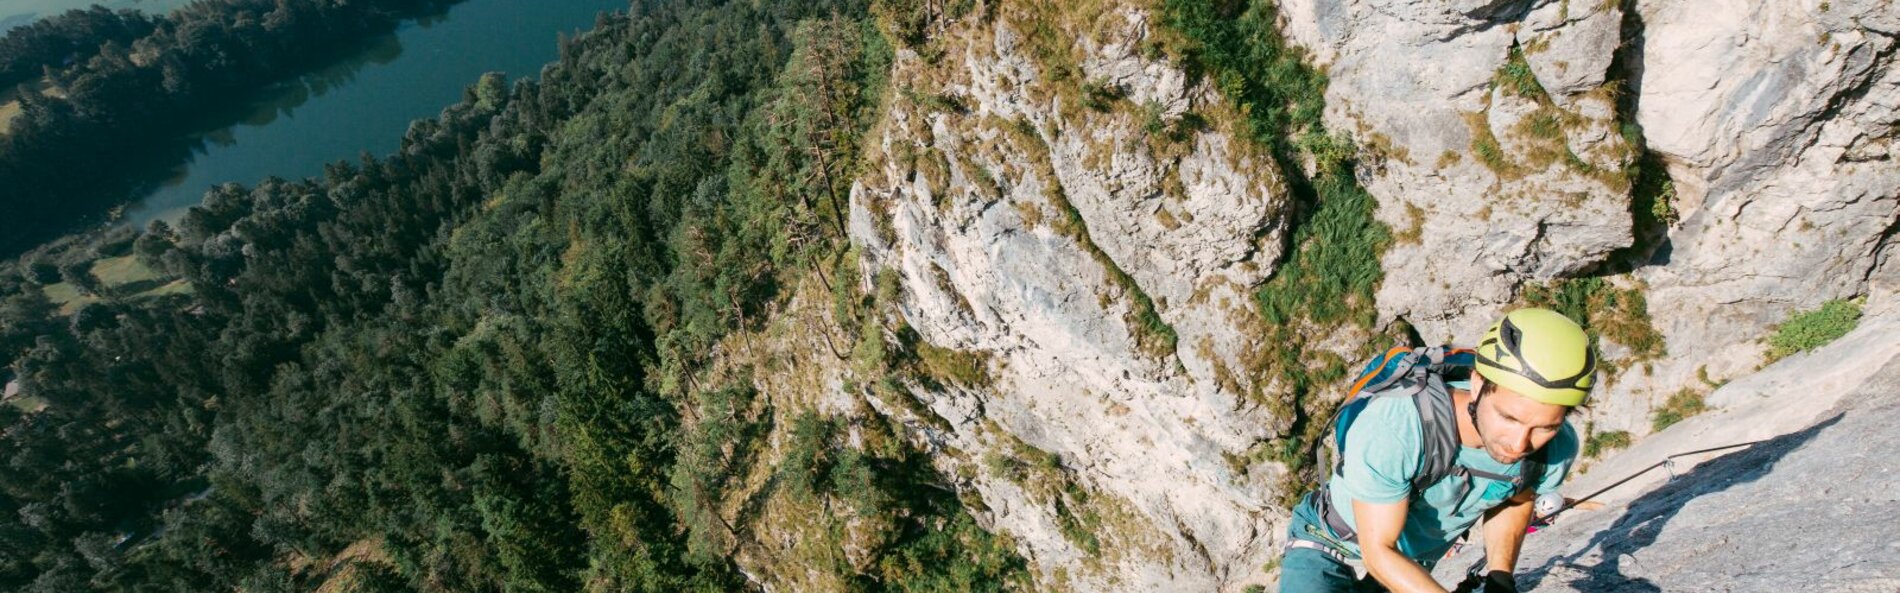 Ein juner Mann klettert entlang eines Drahtseils. Im Hintergrund sieht man die Felswand und im Tal Wald mit einem See.